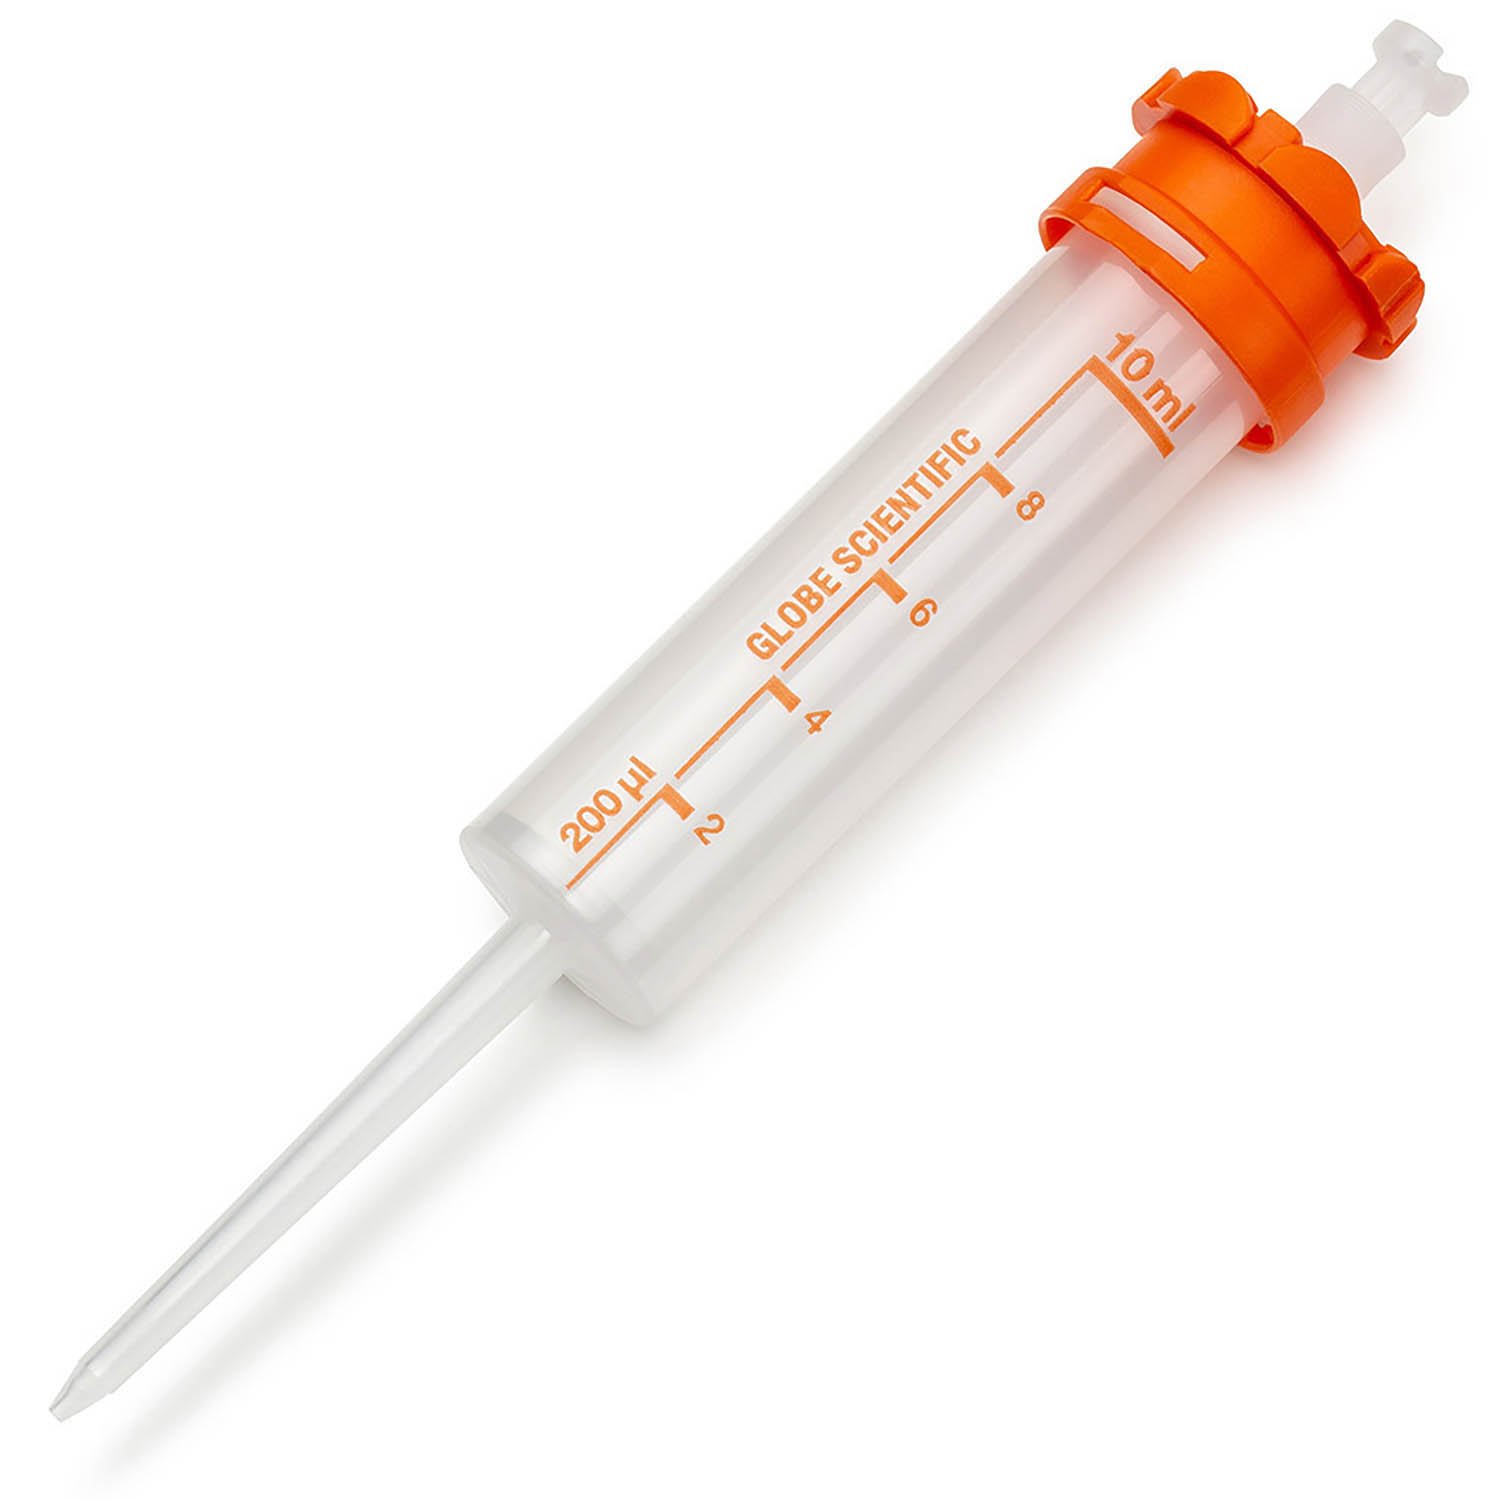 RV-Pette PRO Dispenser Syringe Tip for Repeat Volume Pipettors - Sterile, 10mL, Box of 100